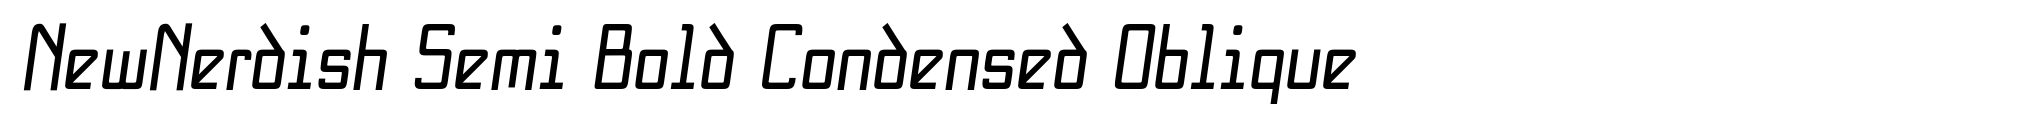 NewNerdish Semi Bold Condensed Oblique image